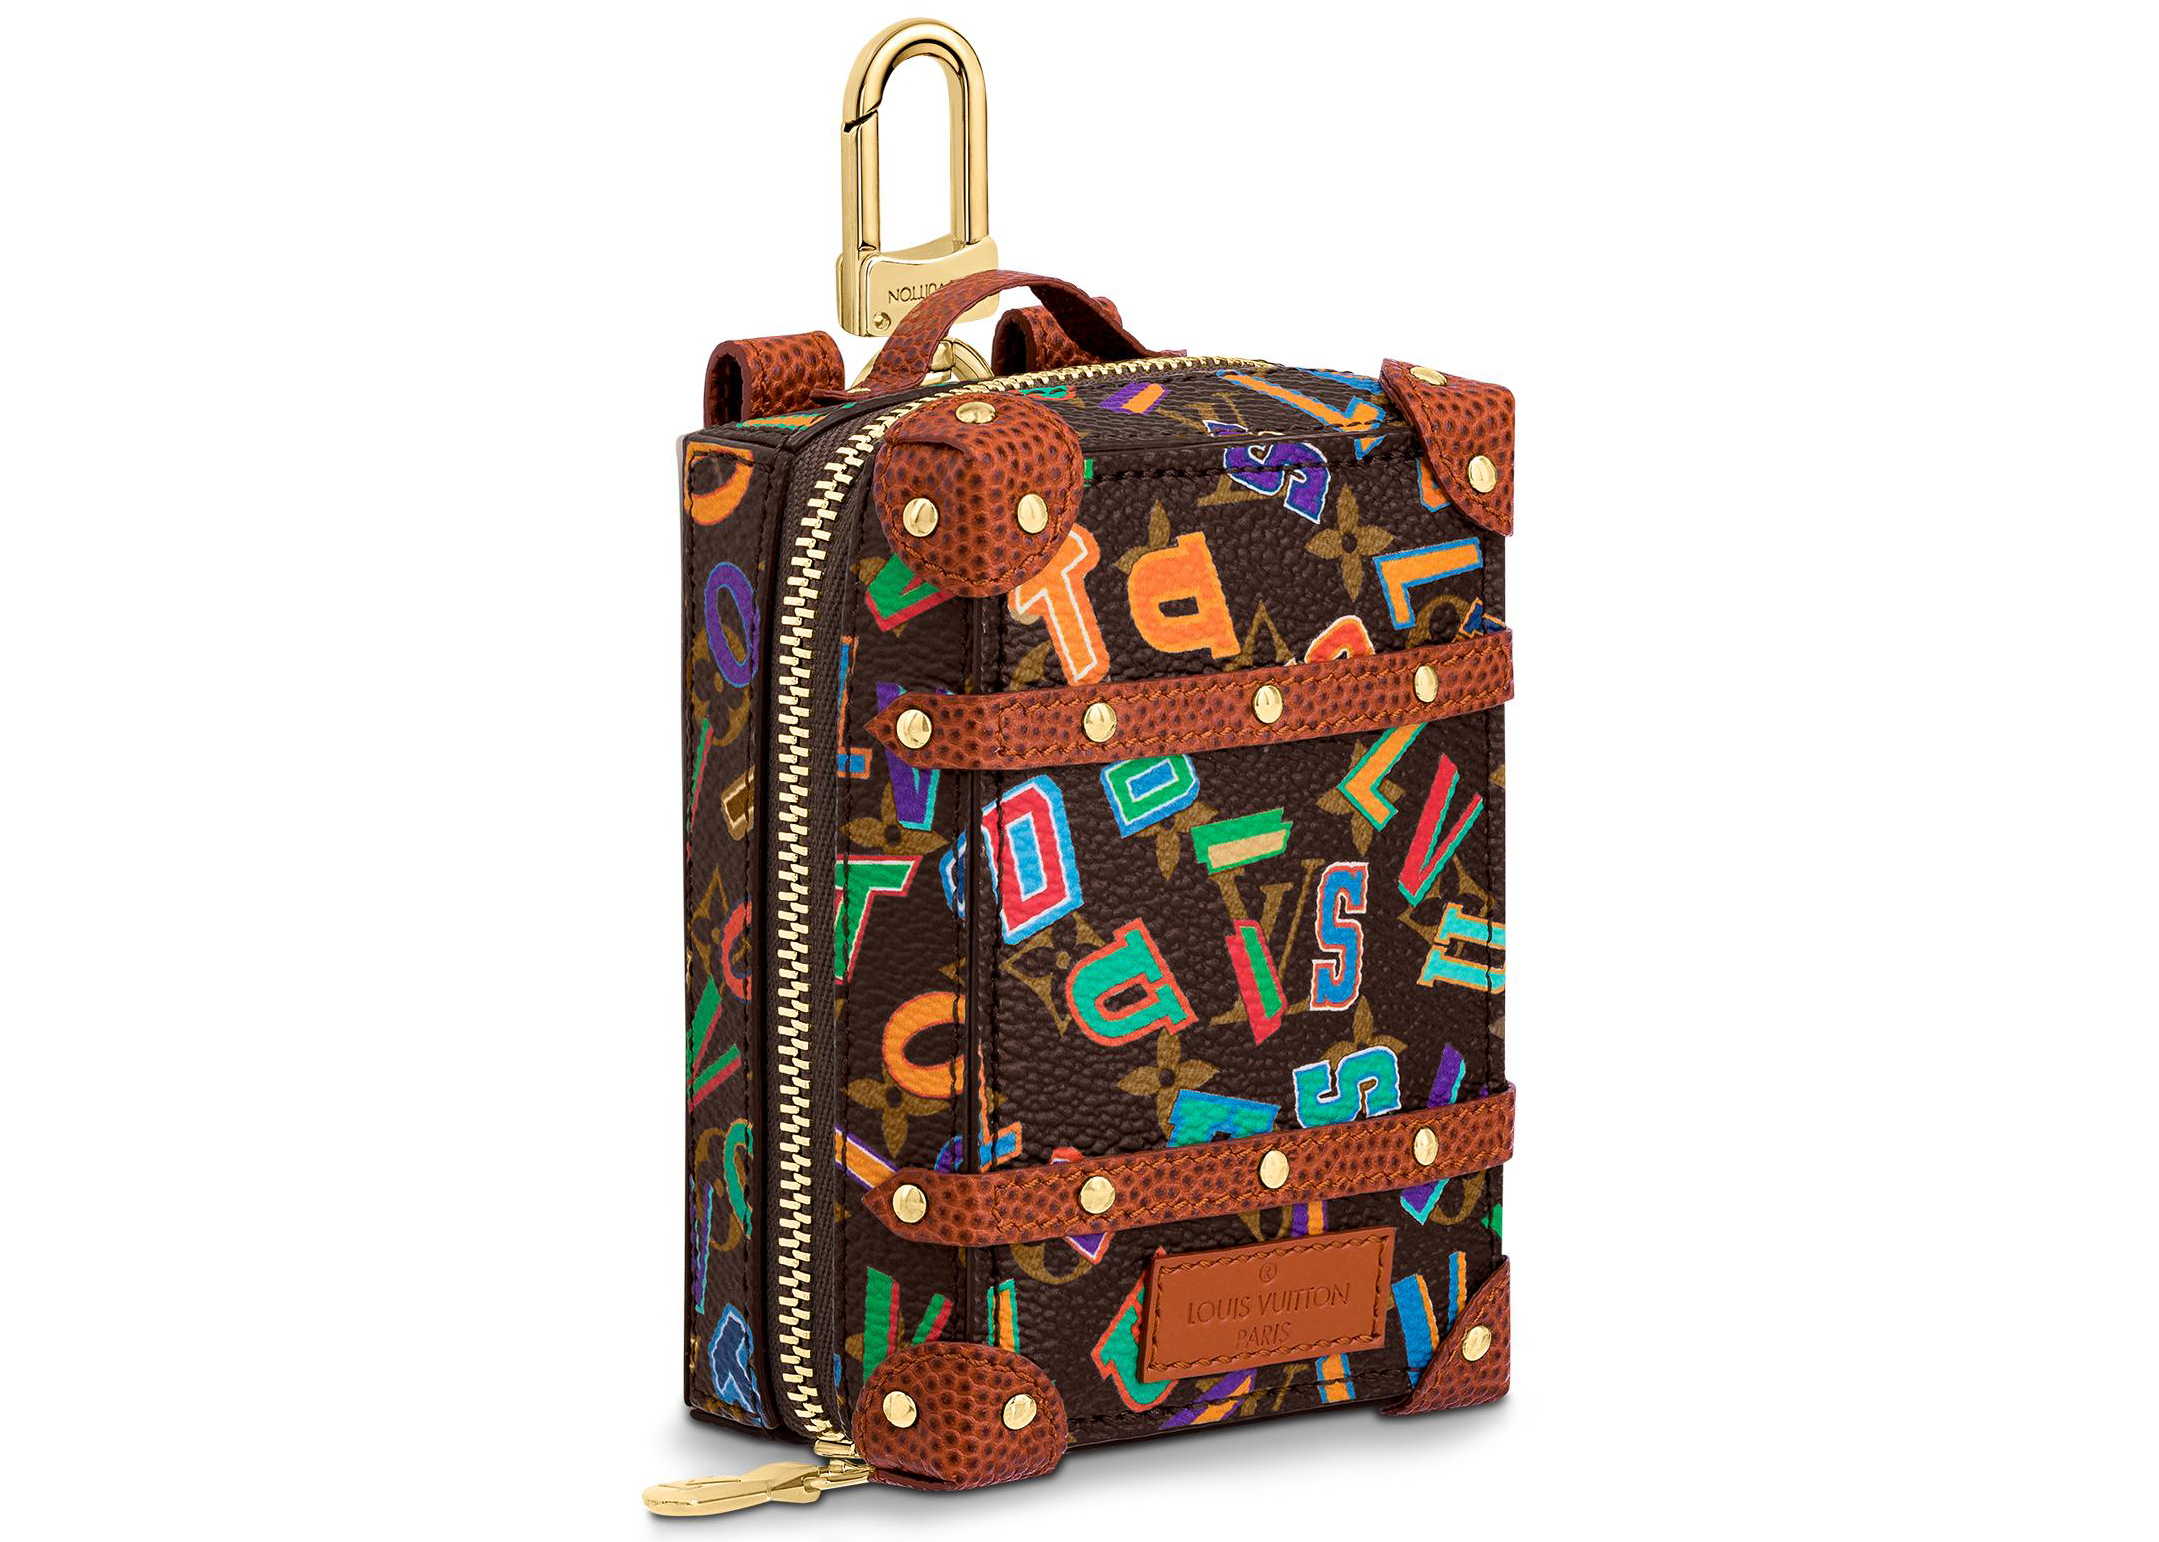 Louis Vuitton x NBA Backpack Trunk Bag Charm & Pouch Mini